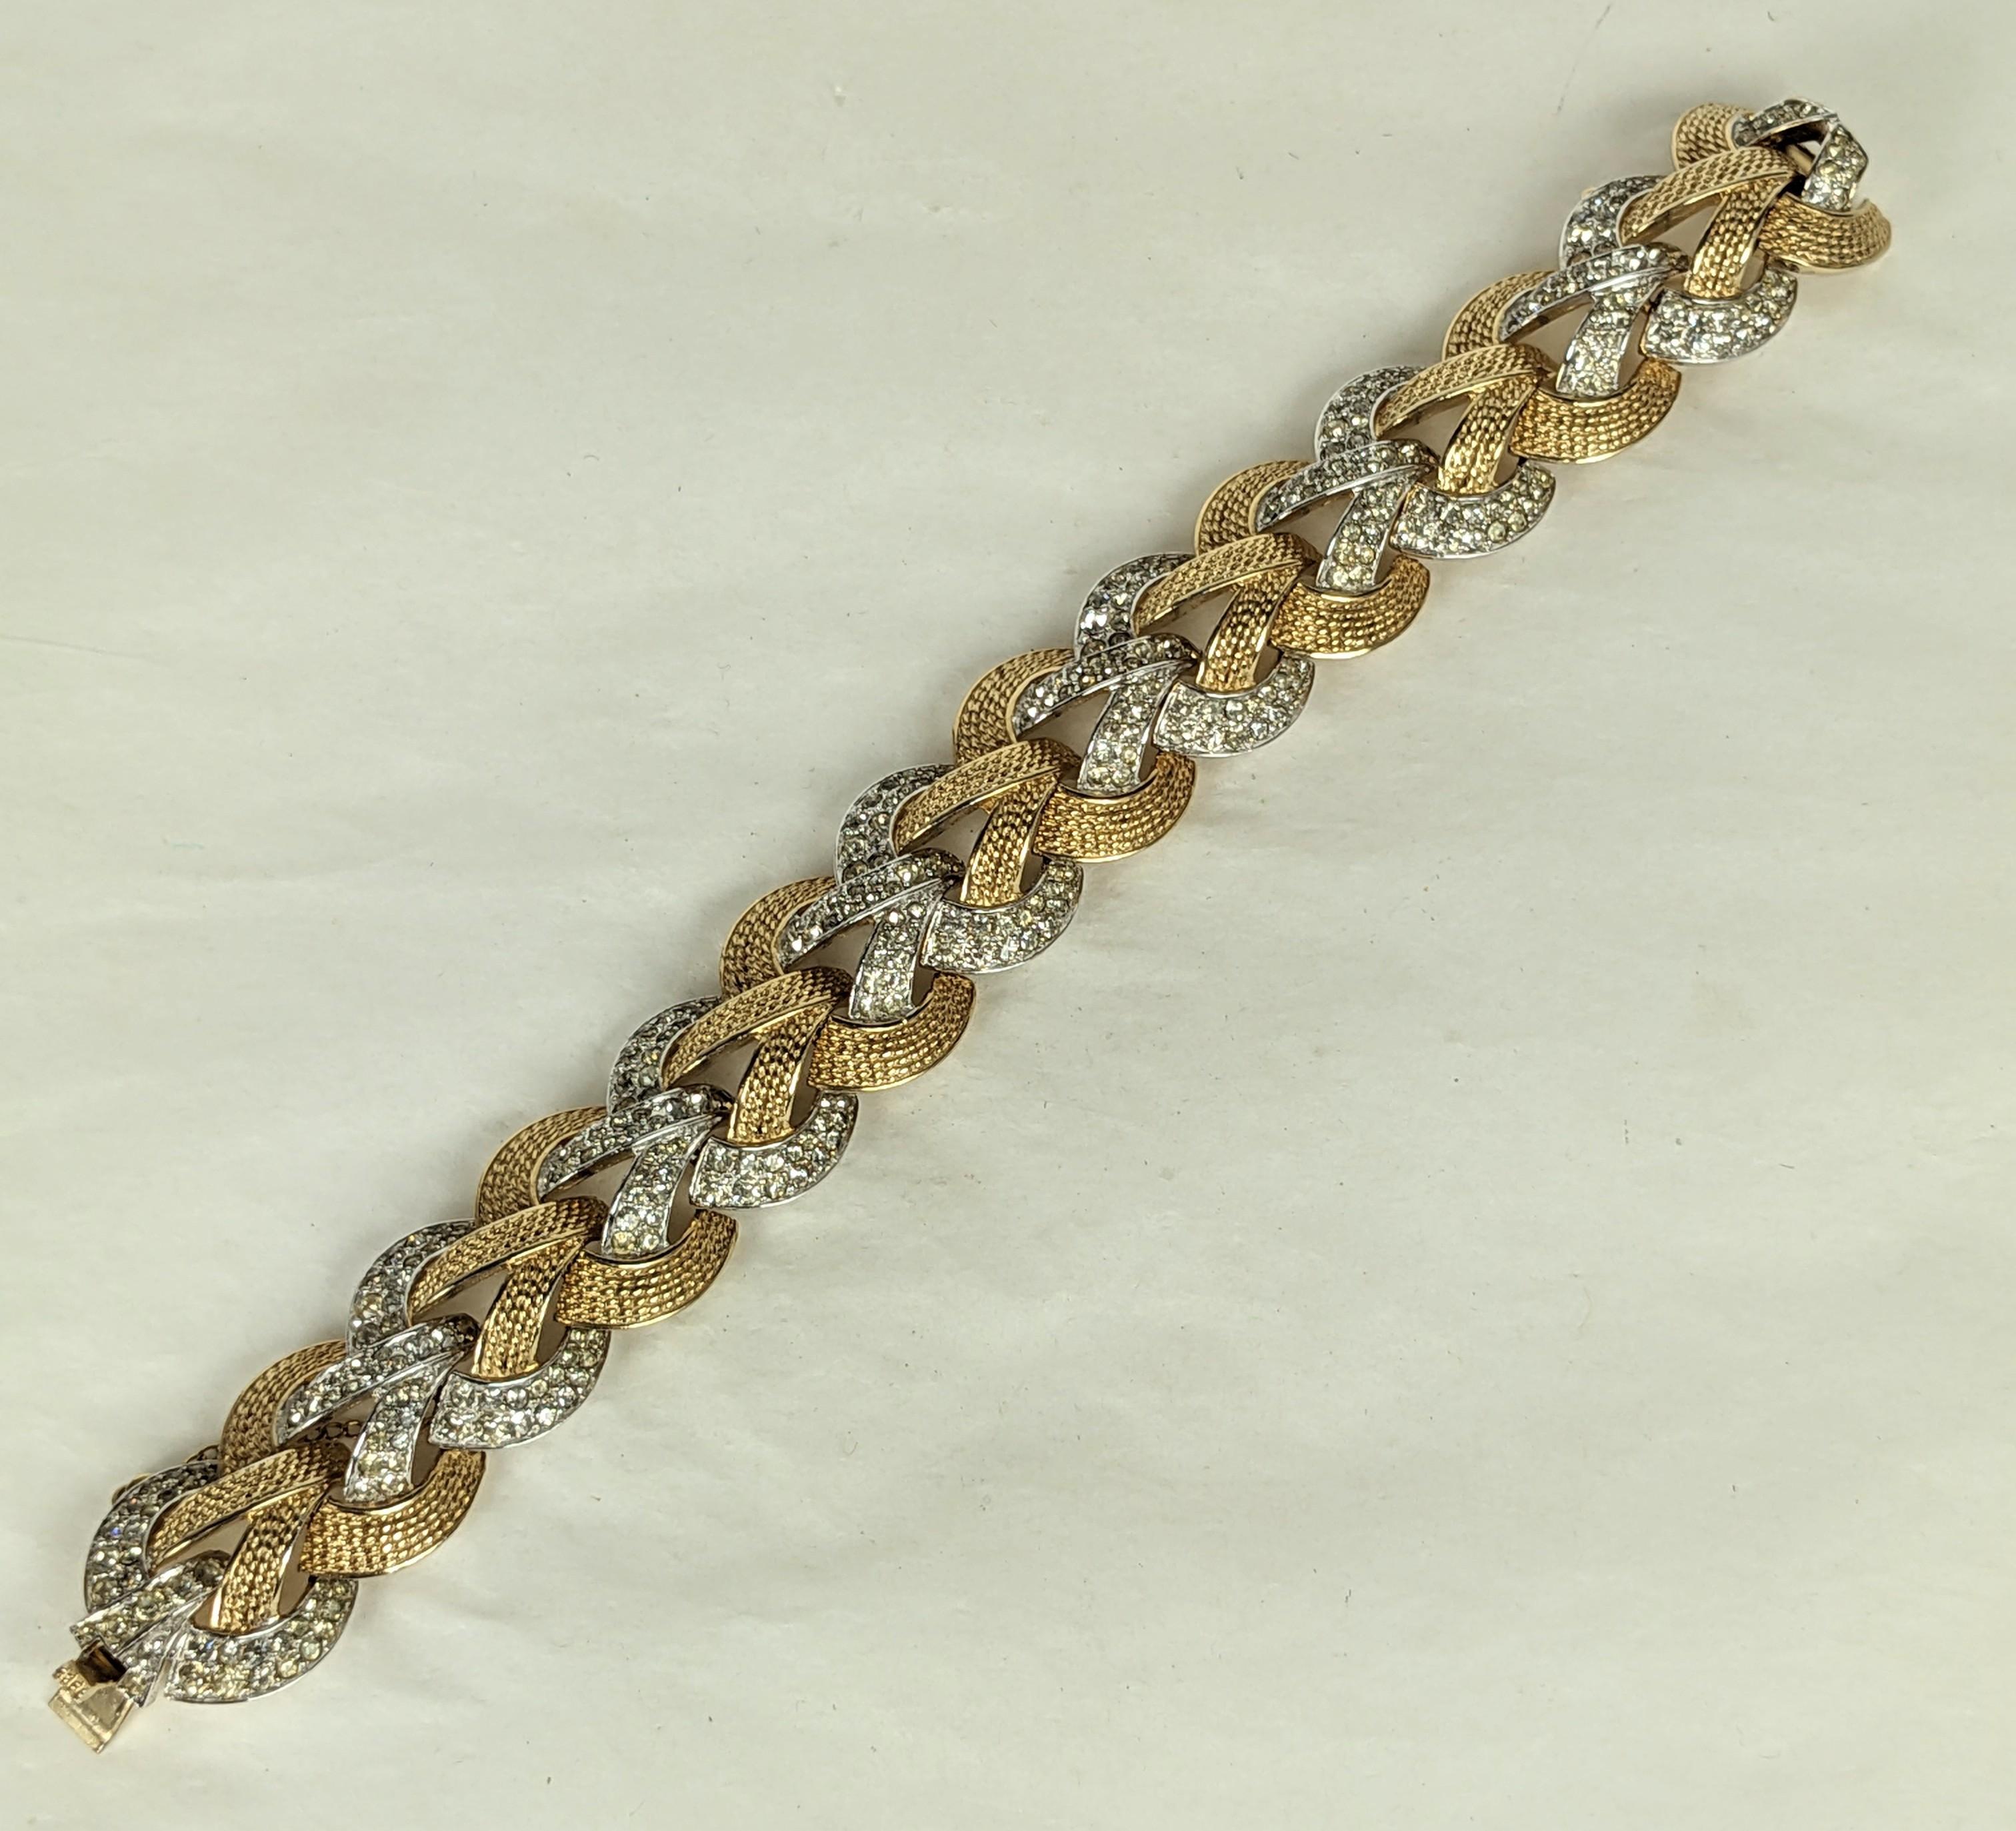 Joli bracelet Marcel Boucher à maillons superposés en métal doré et cristaux pavés, avec motifs superposés en métal doré et cristaux pavés. Conception dimensionnelle et frappante. 8.25